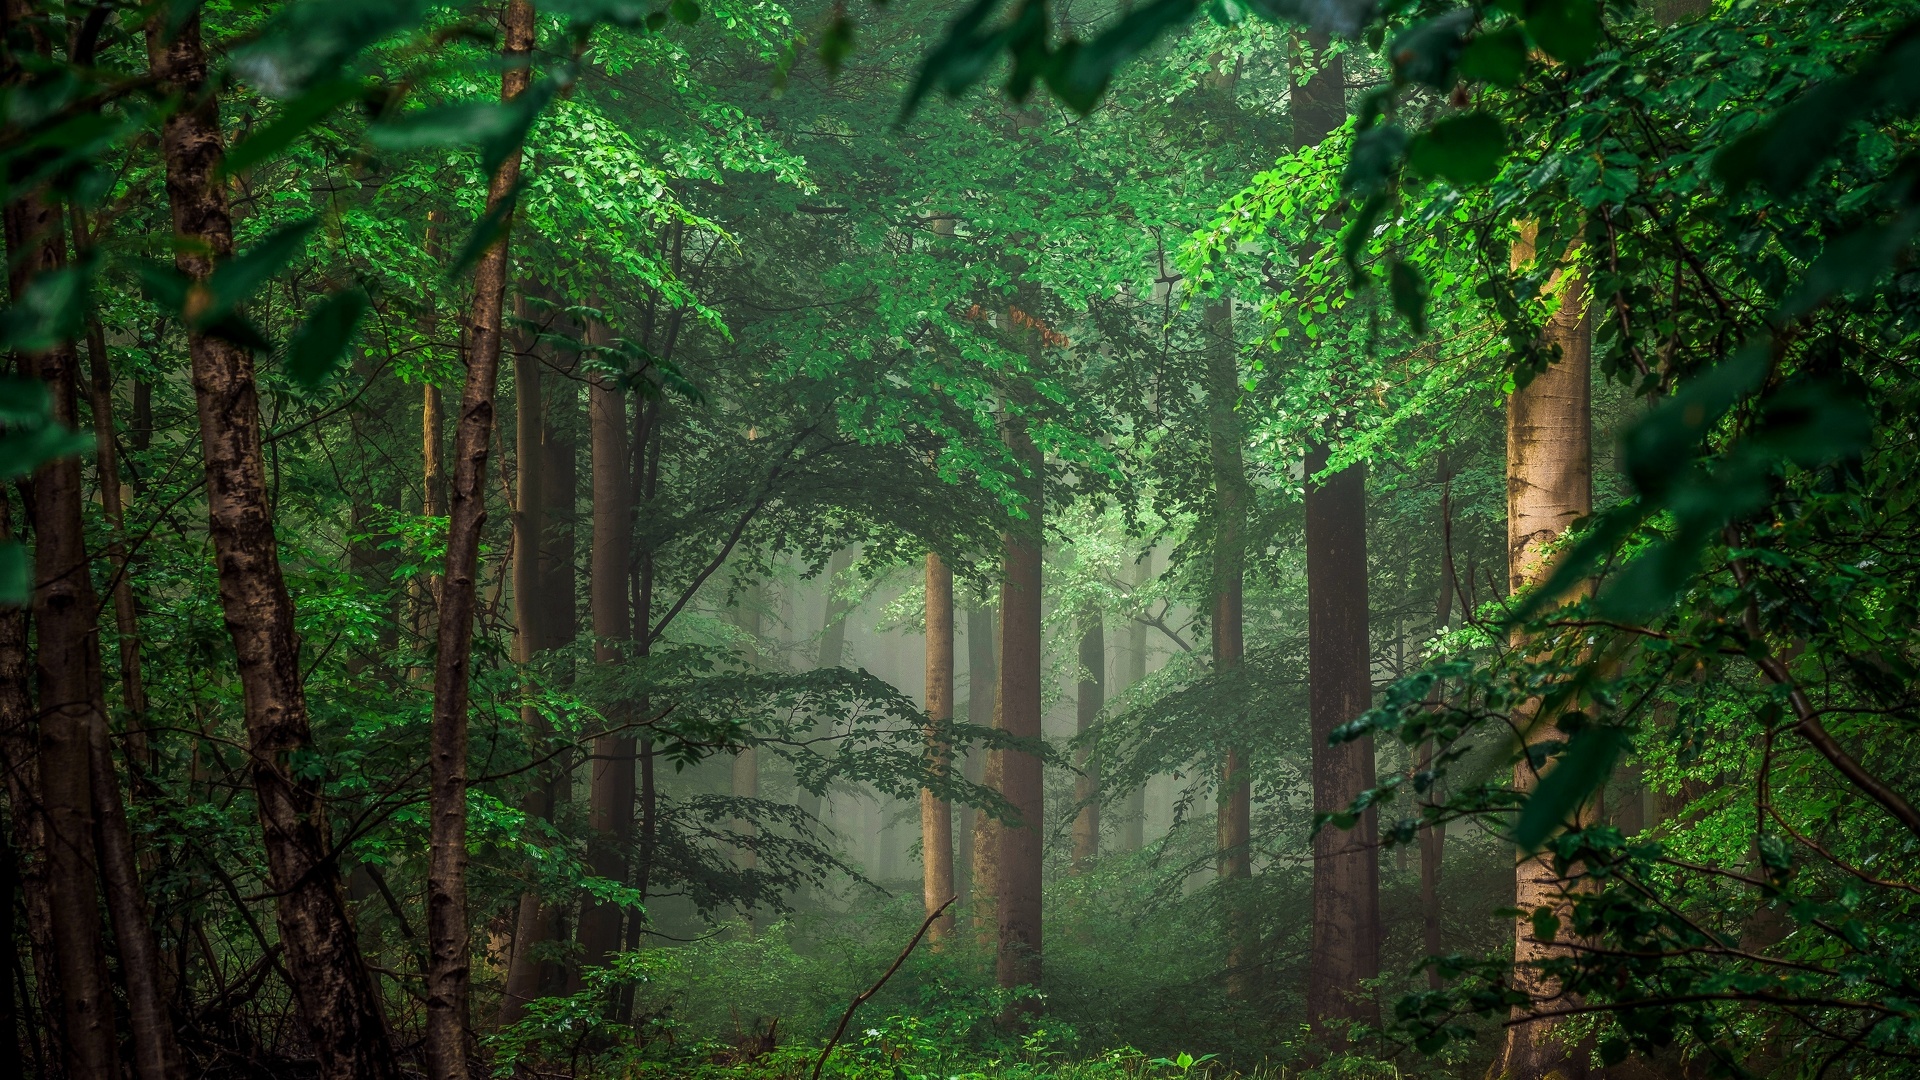 Fond d'écran - Forêt 4K.jpg